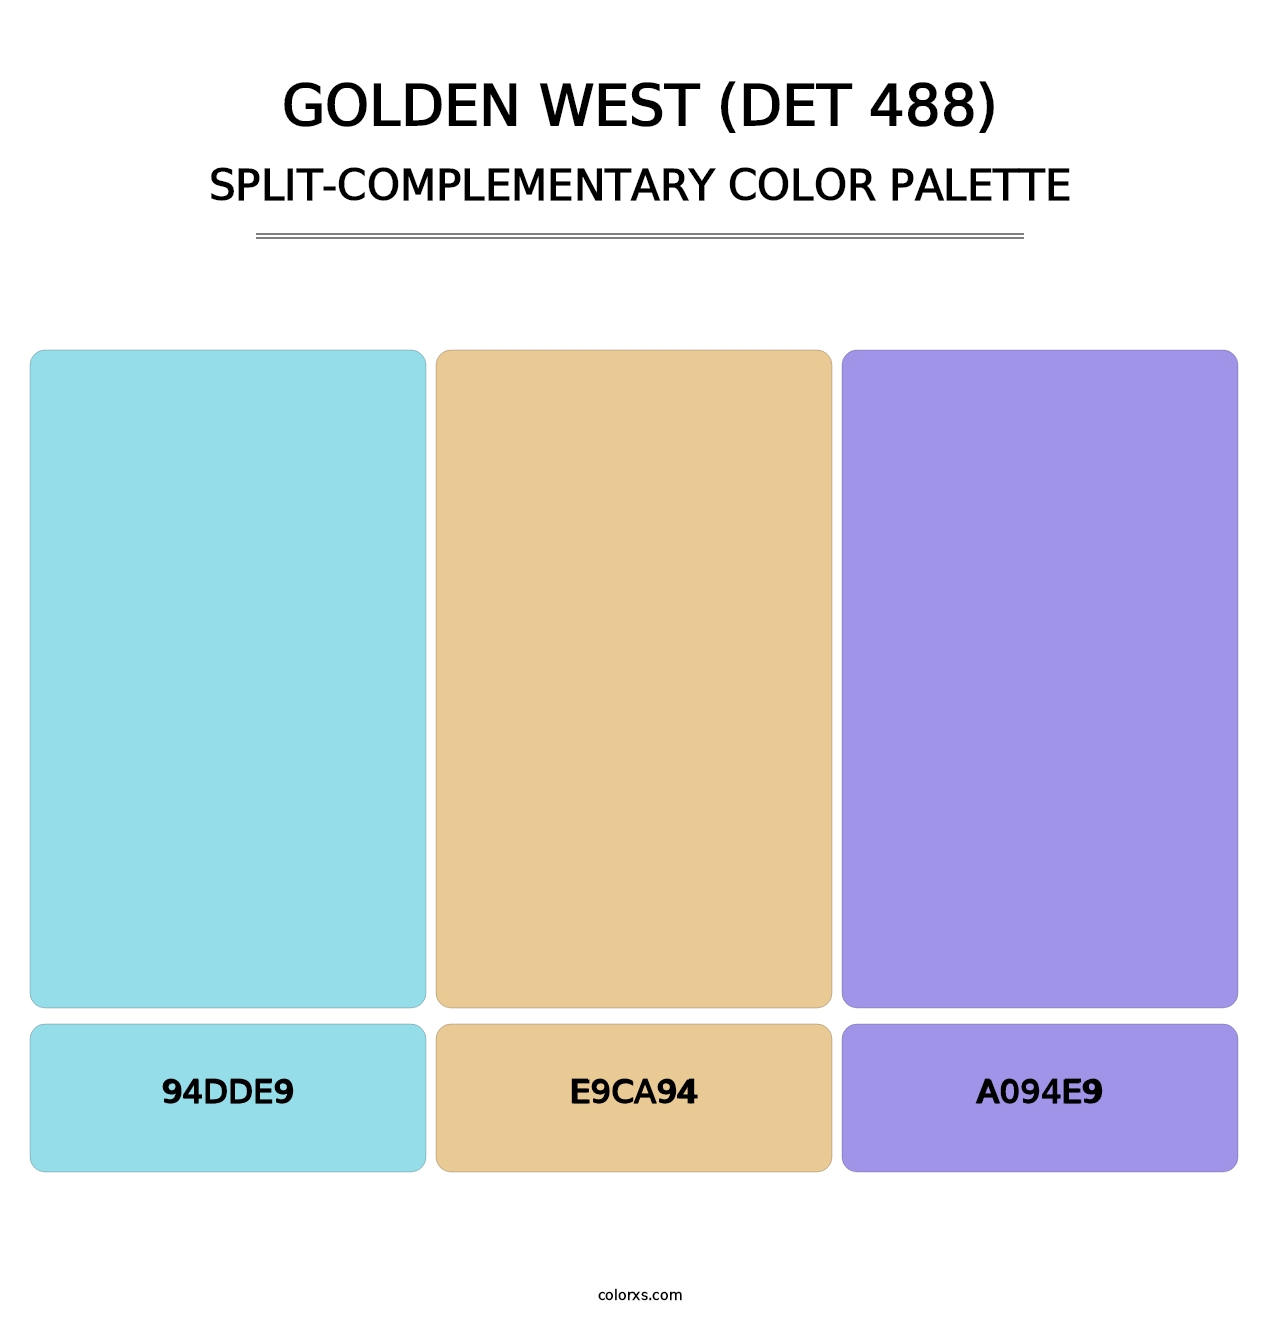 Golden West (DET 488) - Split-Complementary Color Palette